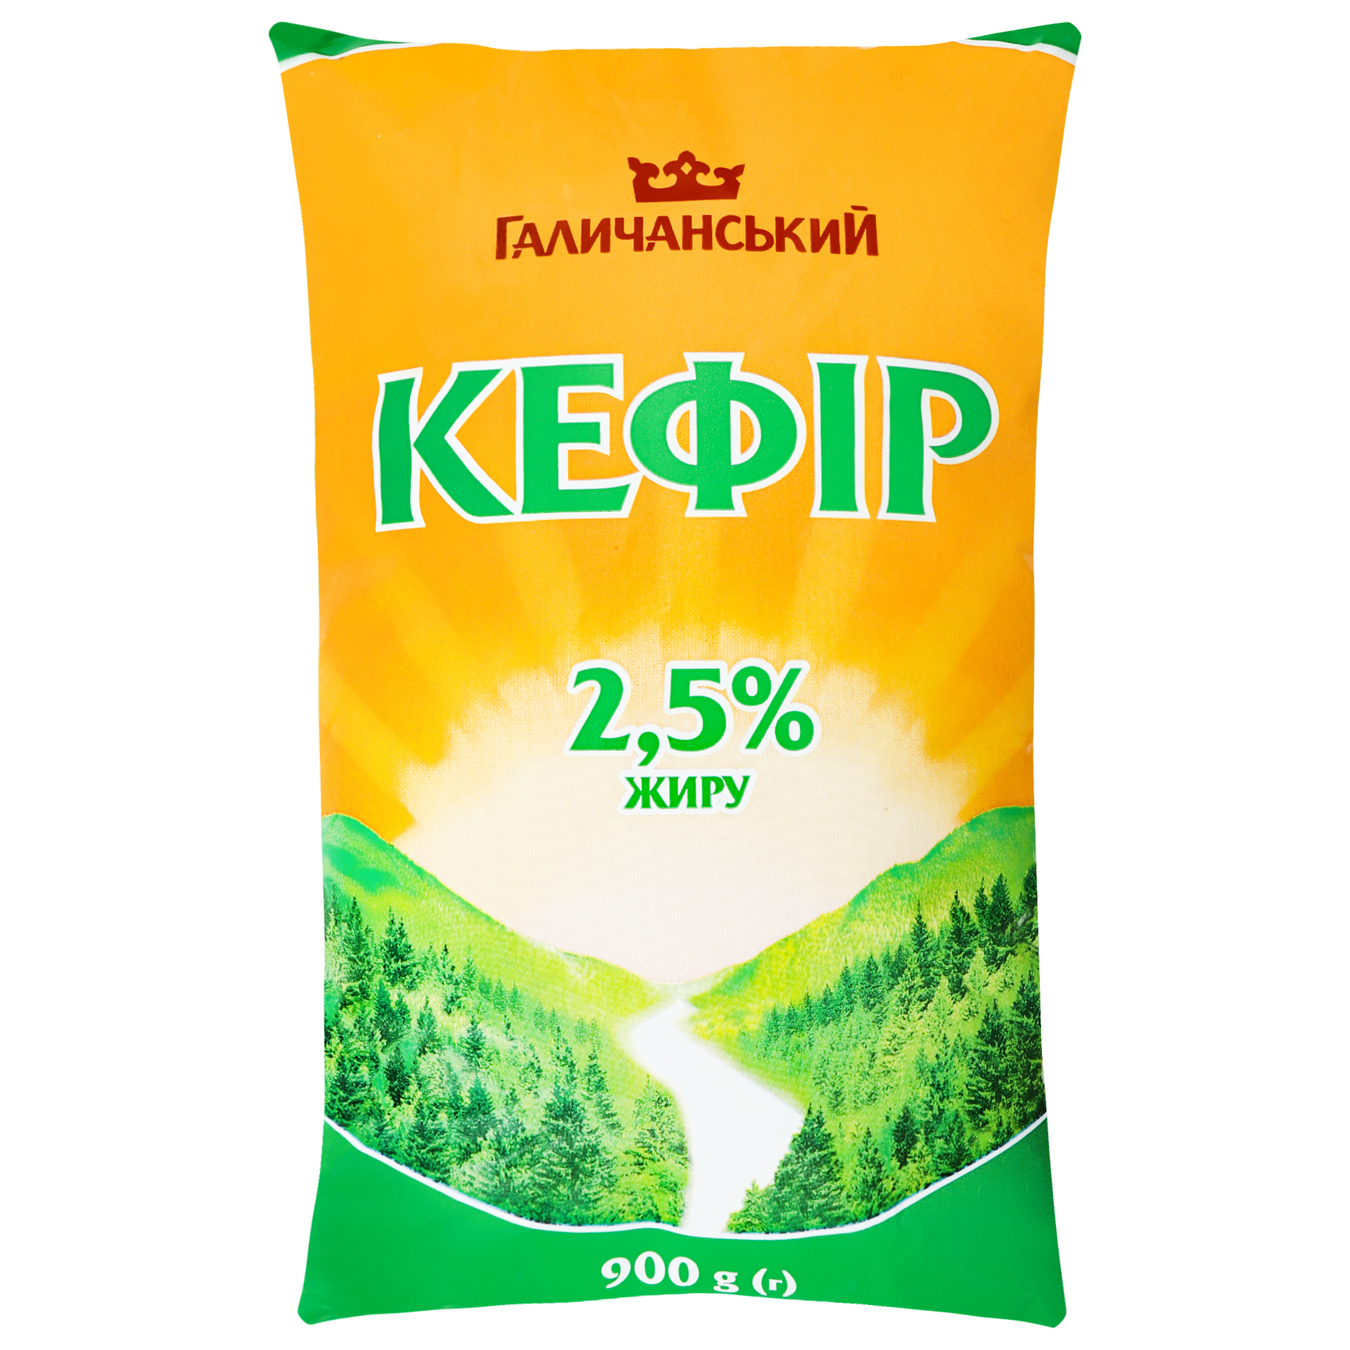 Кефір ГаличанськиЙ 2,5% 900г